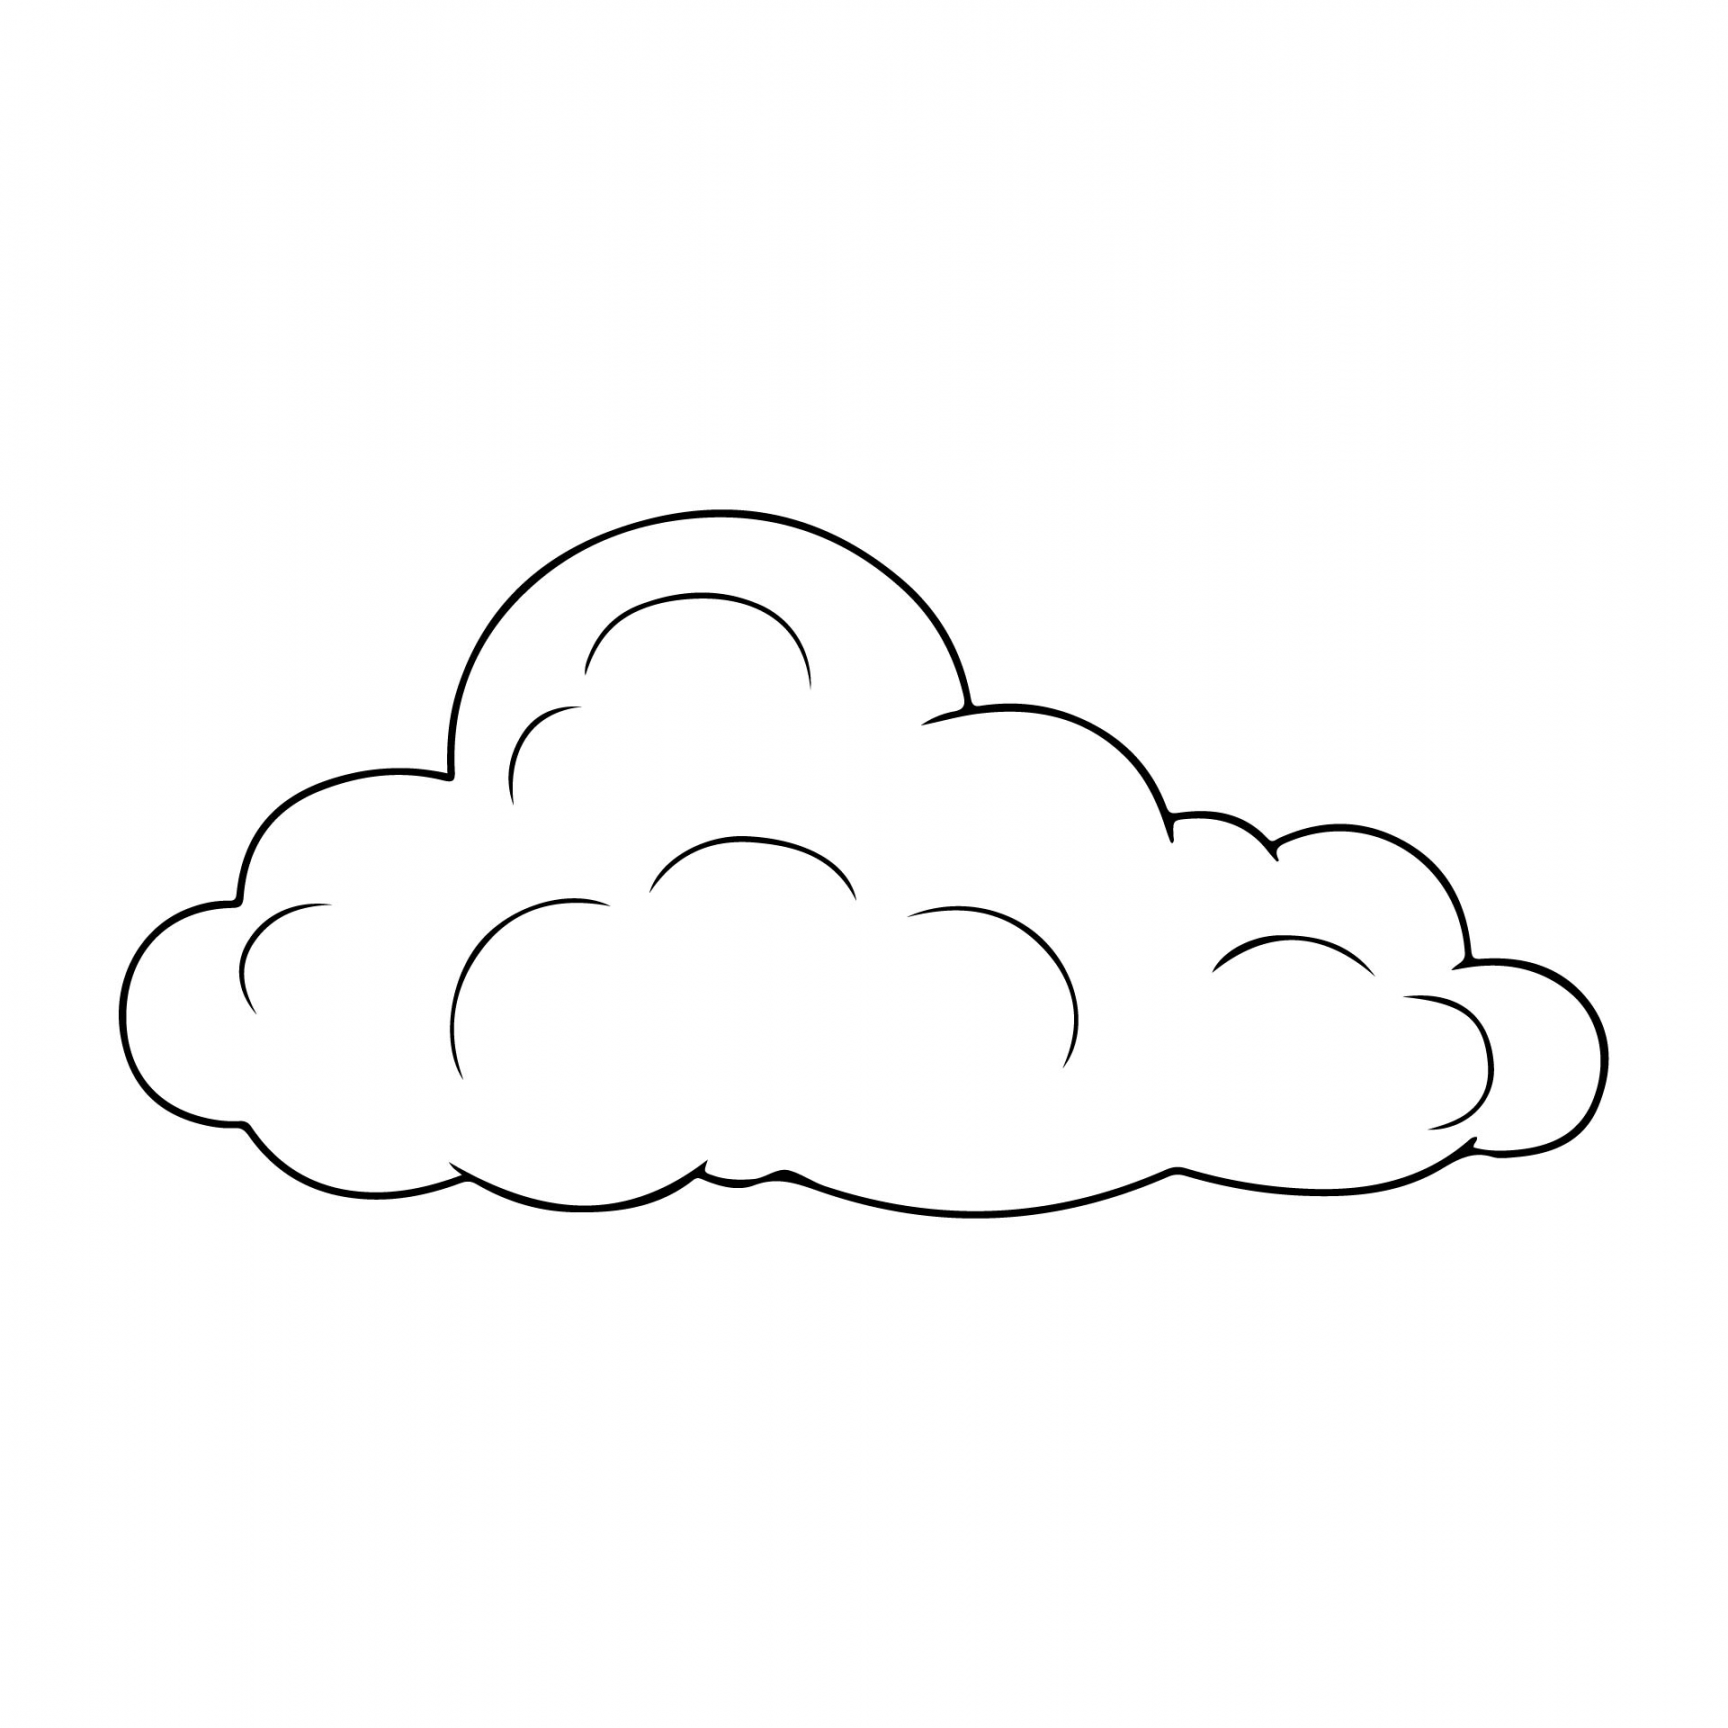 Best Free Printable Cloud Template - printablee